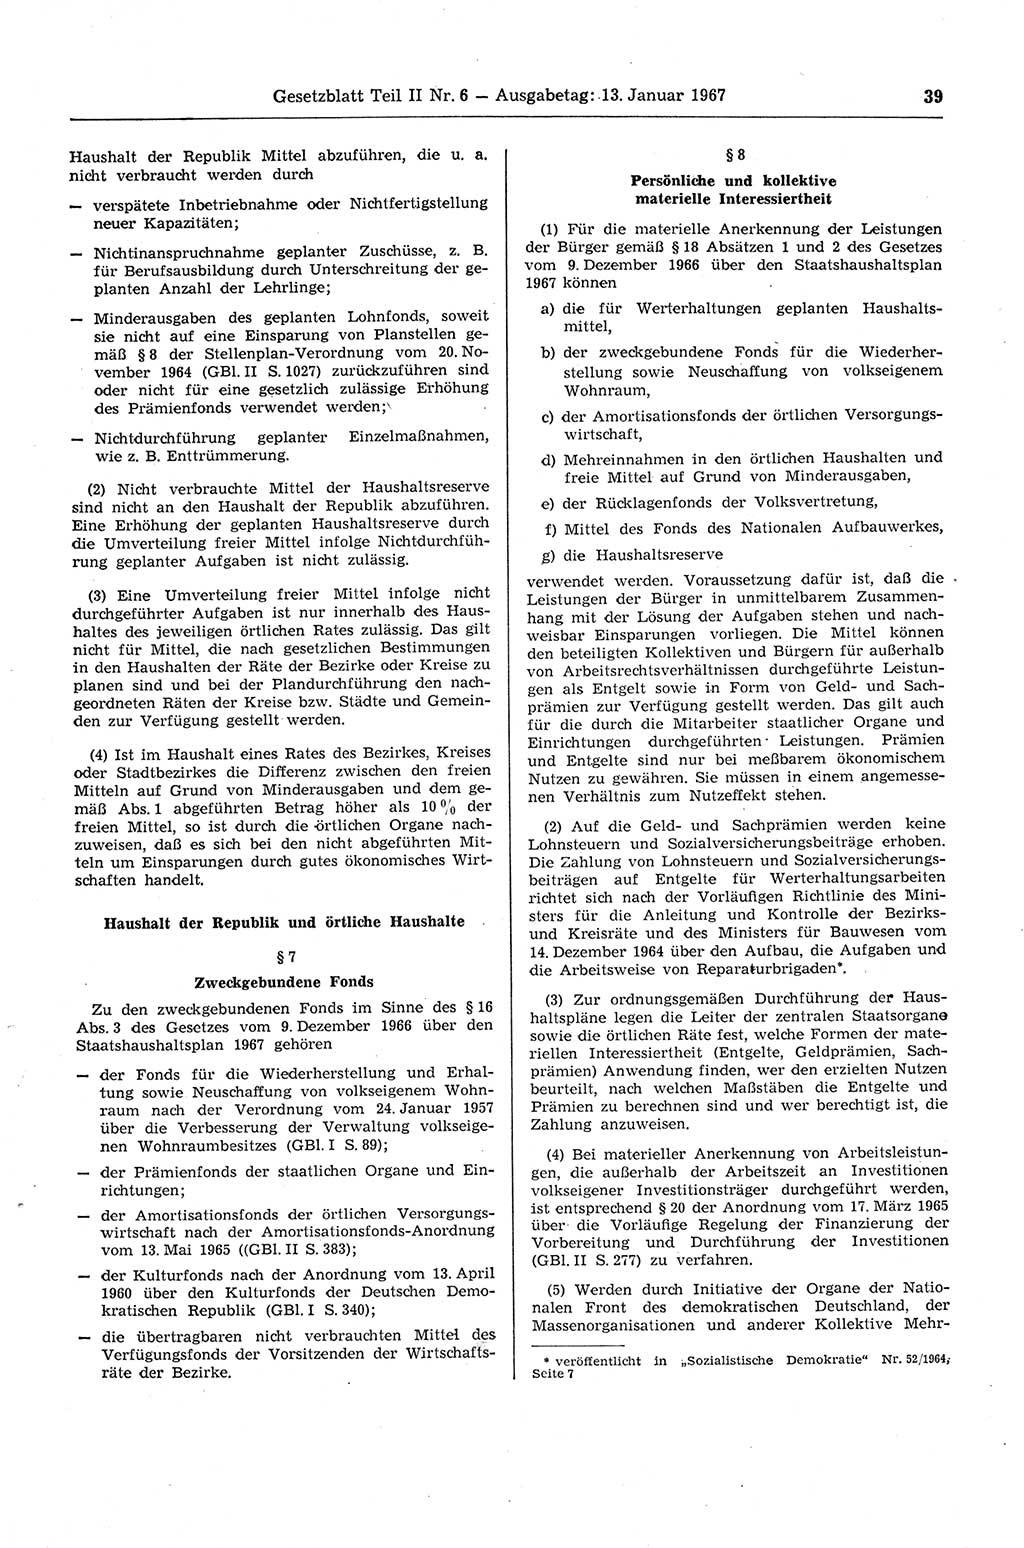 Gesetzblatt (GBl.) der Deutschen Demokratischen Republik (DDR) Teil ⅠⅠ 1967, Seite 39 (GBl. DDR ⅠⅠ 1967, S. 39)